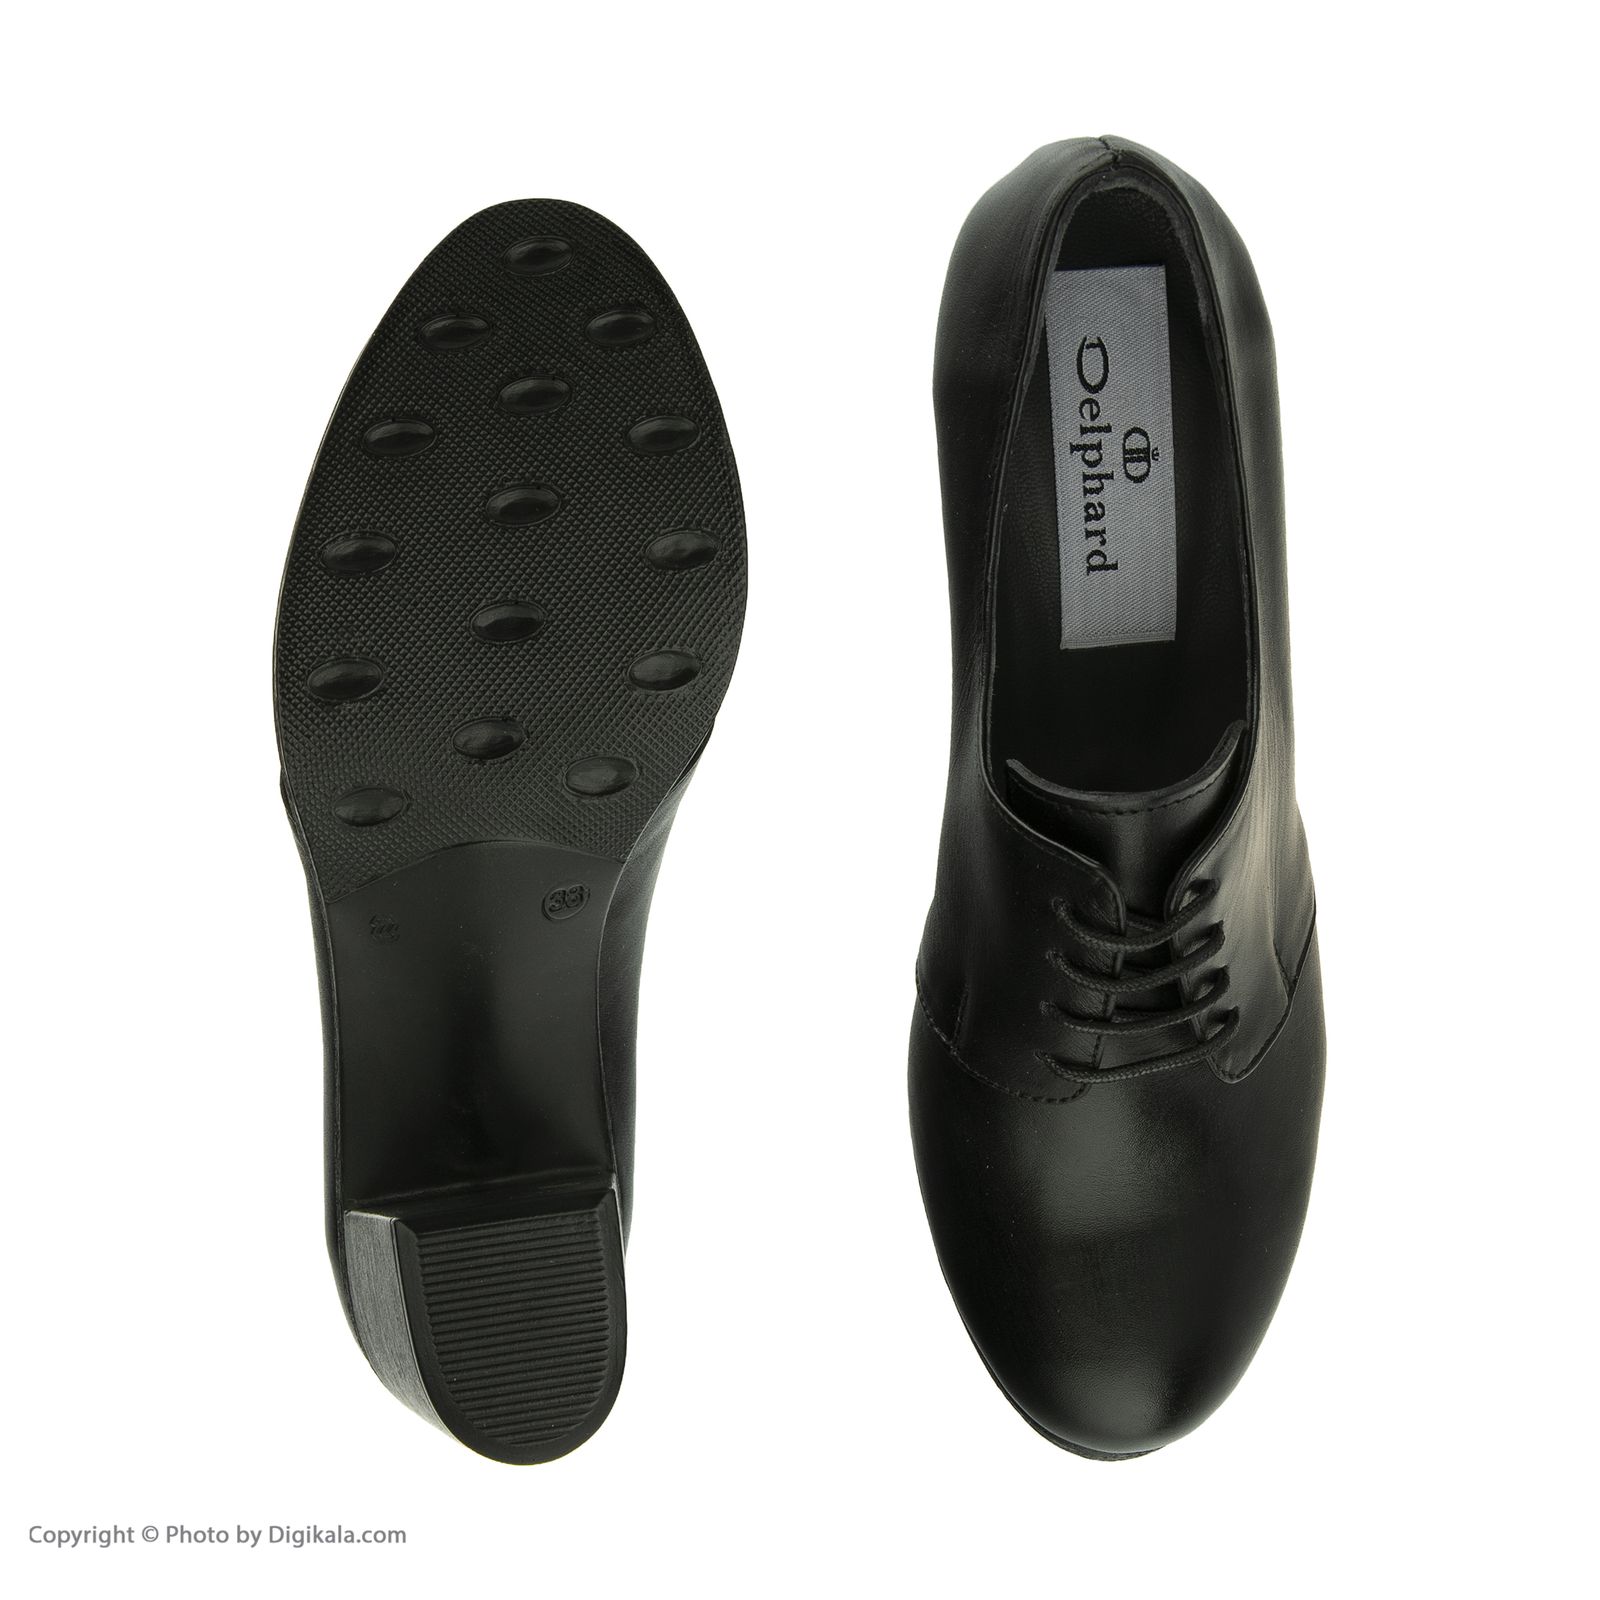  کفش زنانه دلفارد مدل 5m02a500101 -  - 6